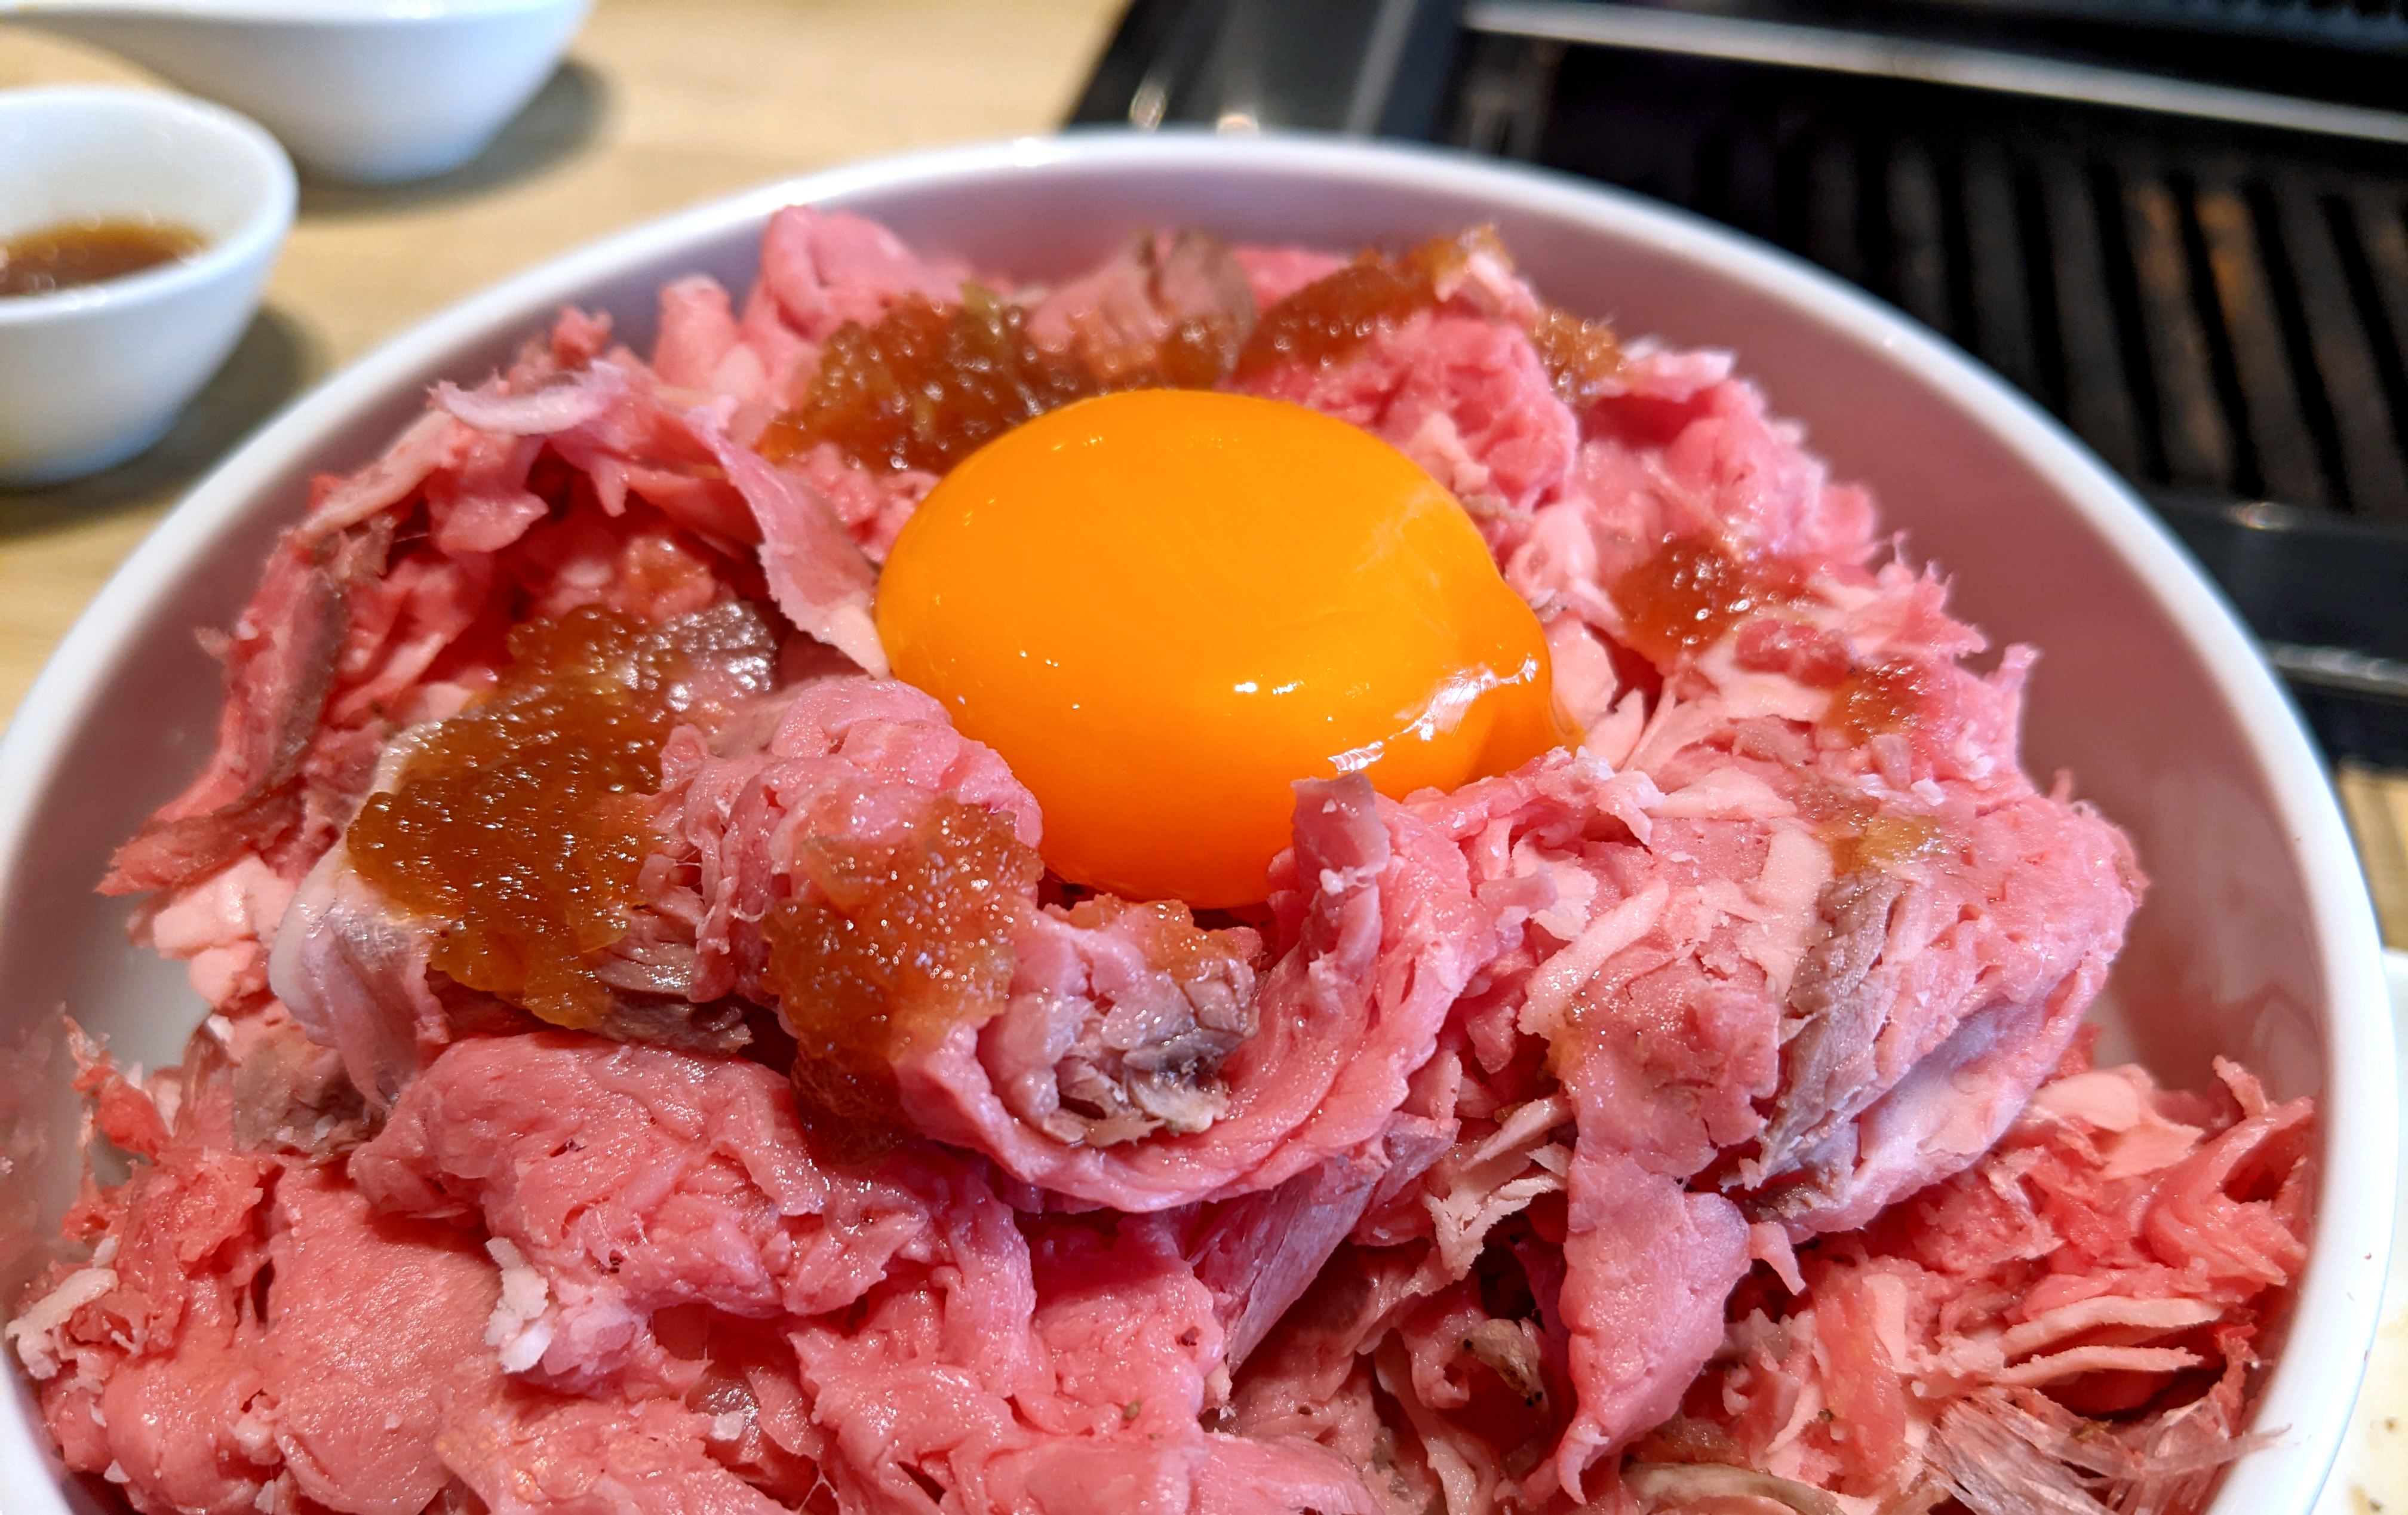 ストップ というまで積み上がる 盛り放題 のローストビーフ丼が最高すぎる 東京 池袋 牛恋 ロケットニュース24